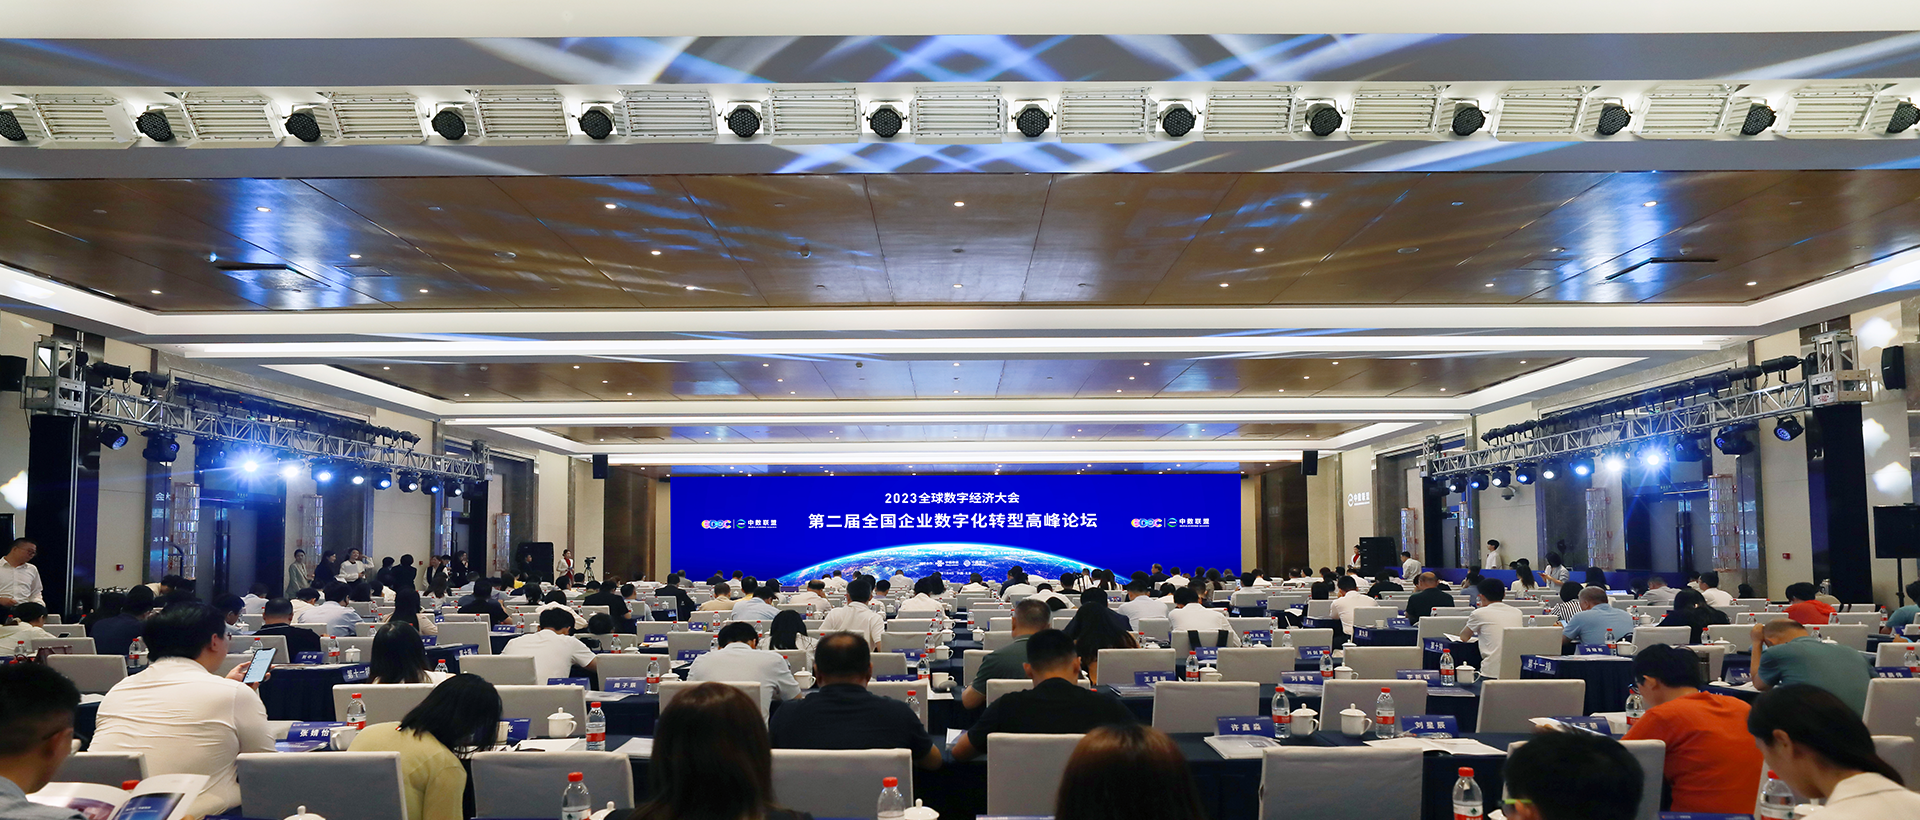 2023全球数字经济大会第二届全国企业数字化转型高峰论坛在京举行